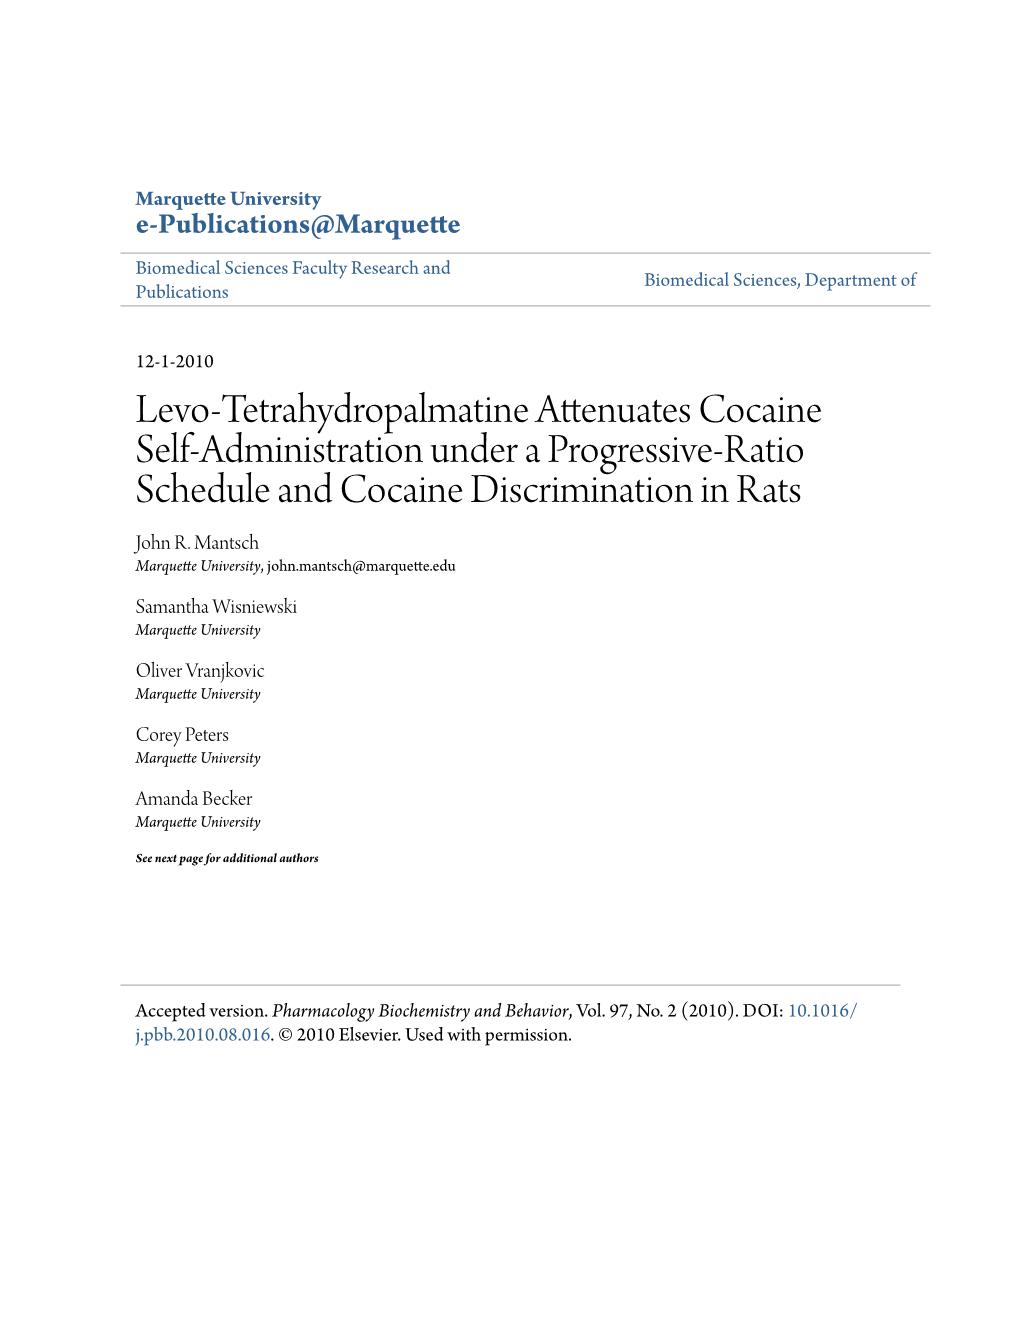 Levo-Tetrahydropalmatine Attenuates Cocaine Self-Administration Under a Progressive-Ratio Schedule and Cocaine Discrimination in Rats John R